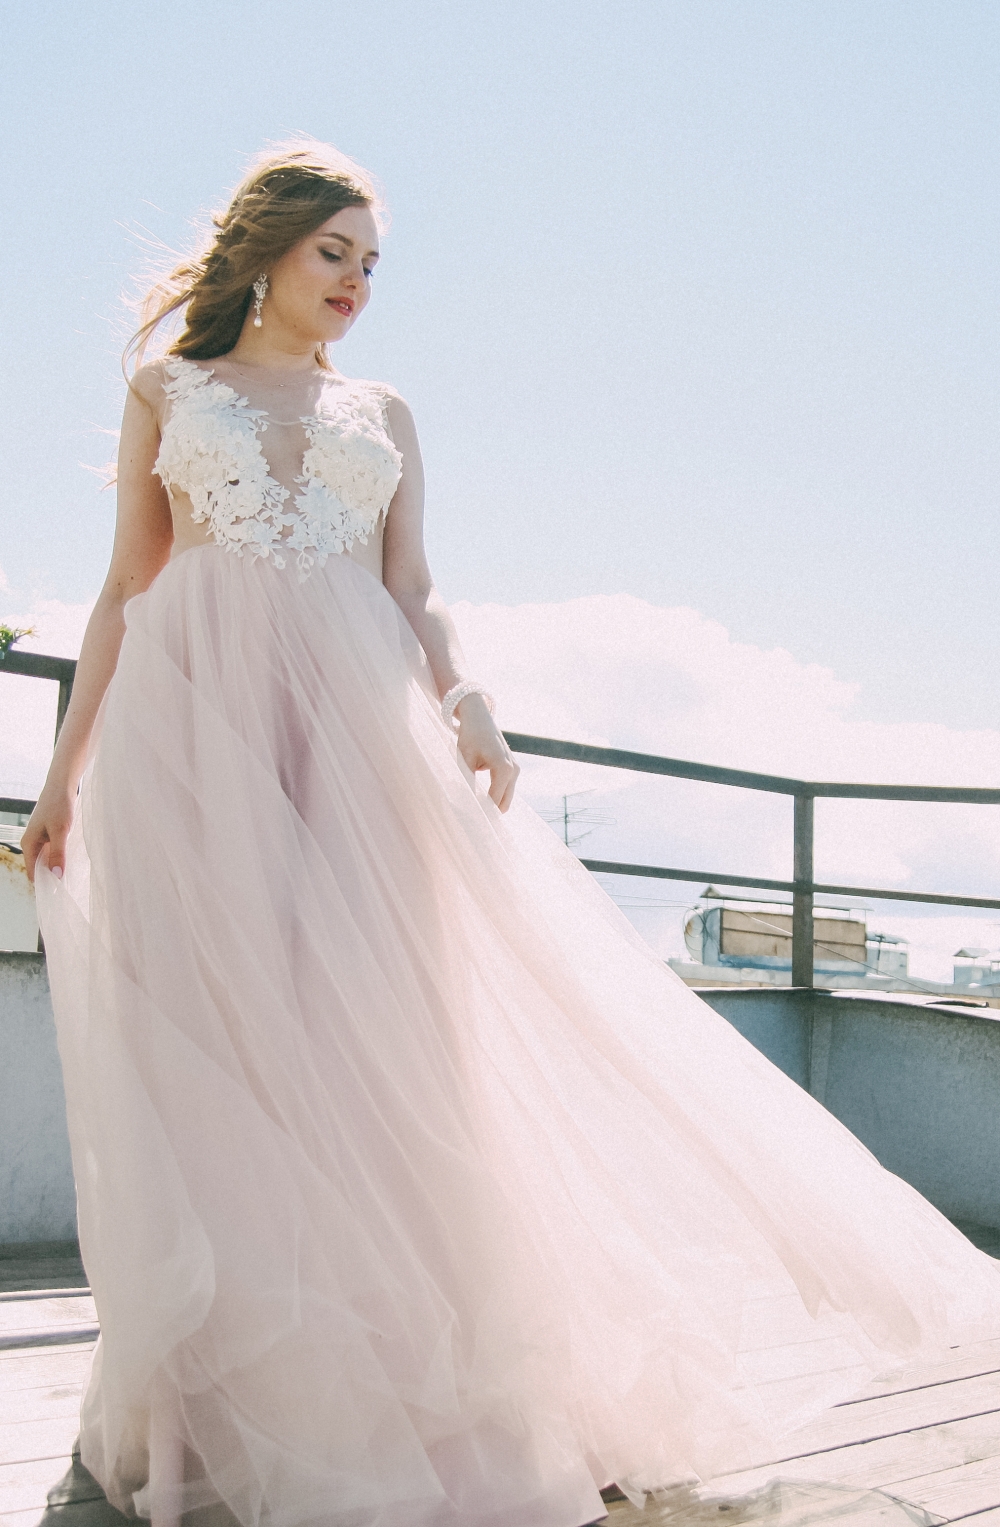 Платье с обсаженным верхом, декорированное 3д кружевом - идеальный вариант для летней свадьбы!